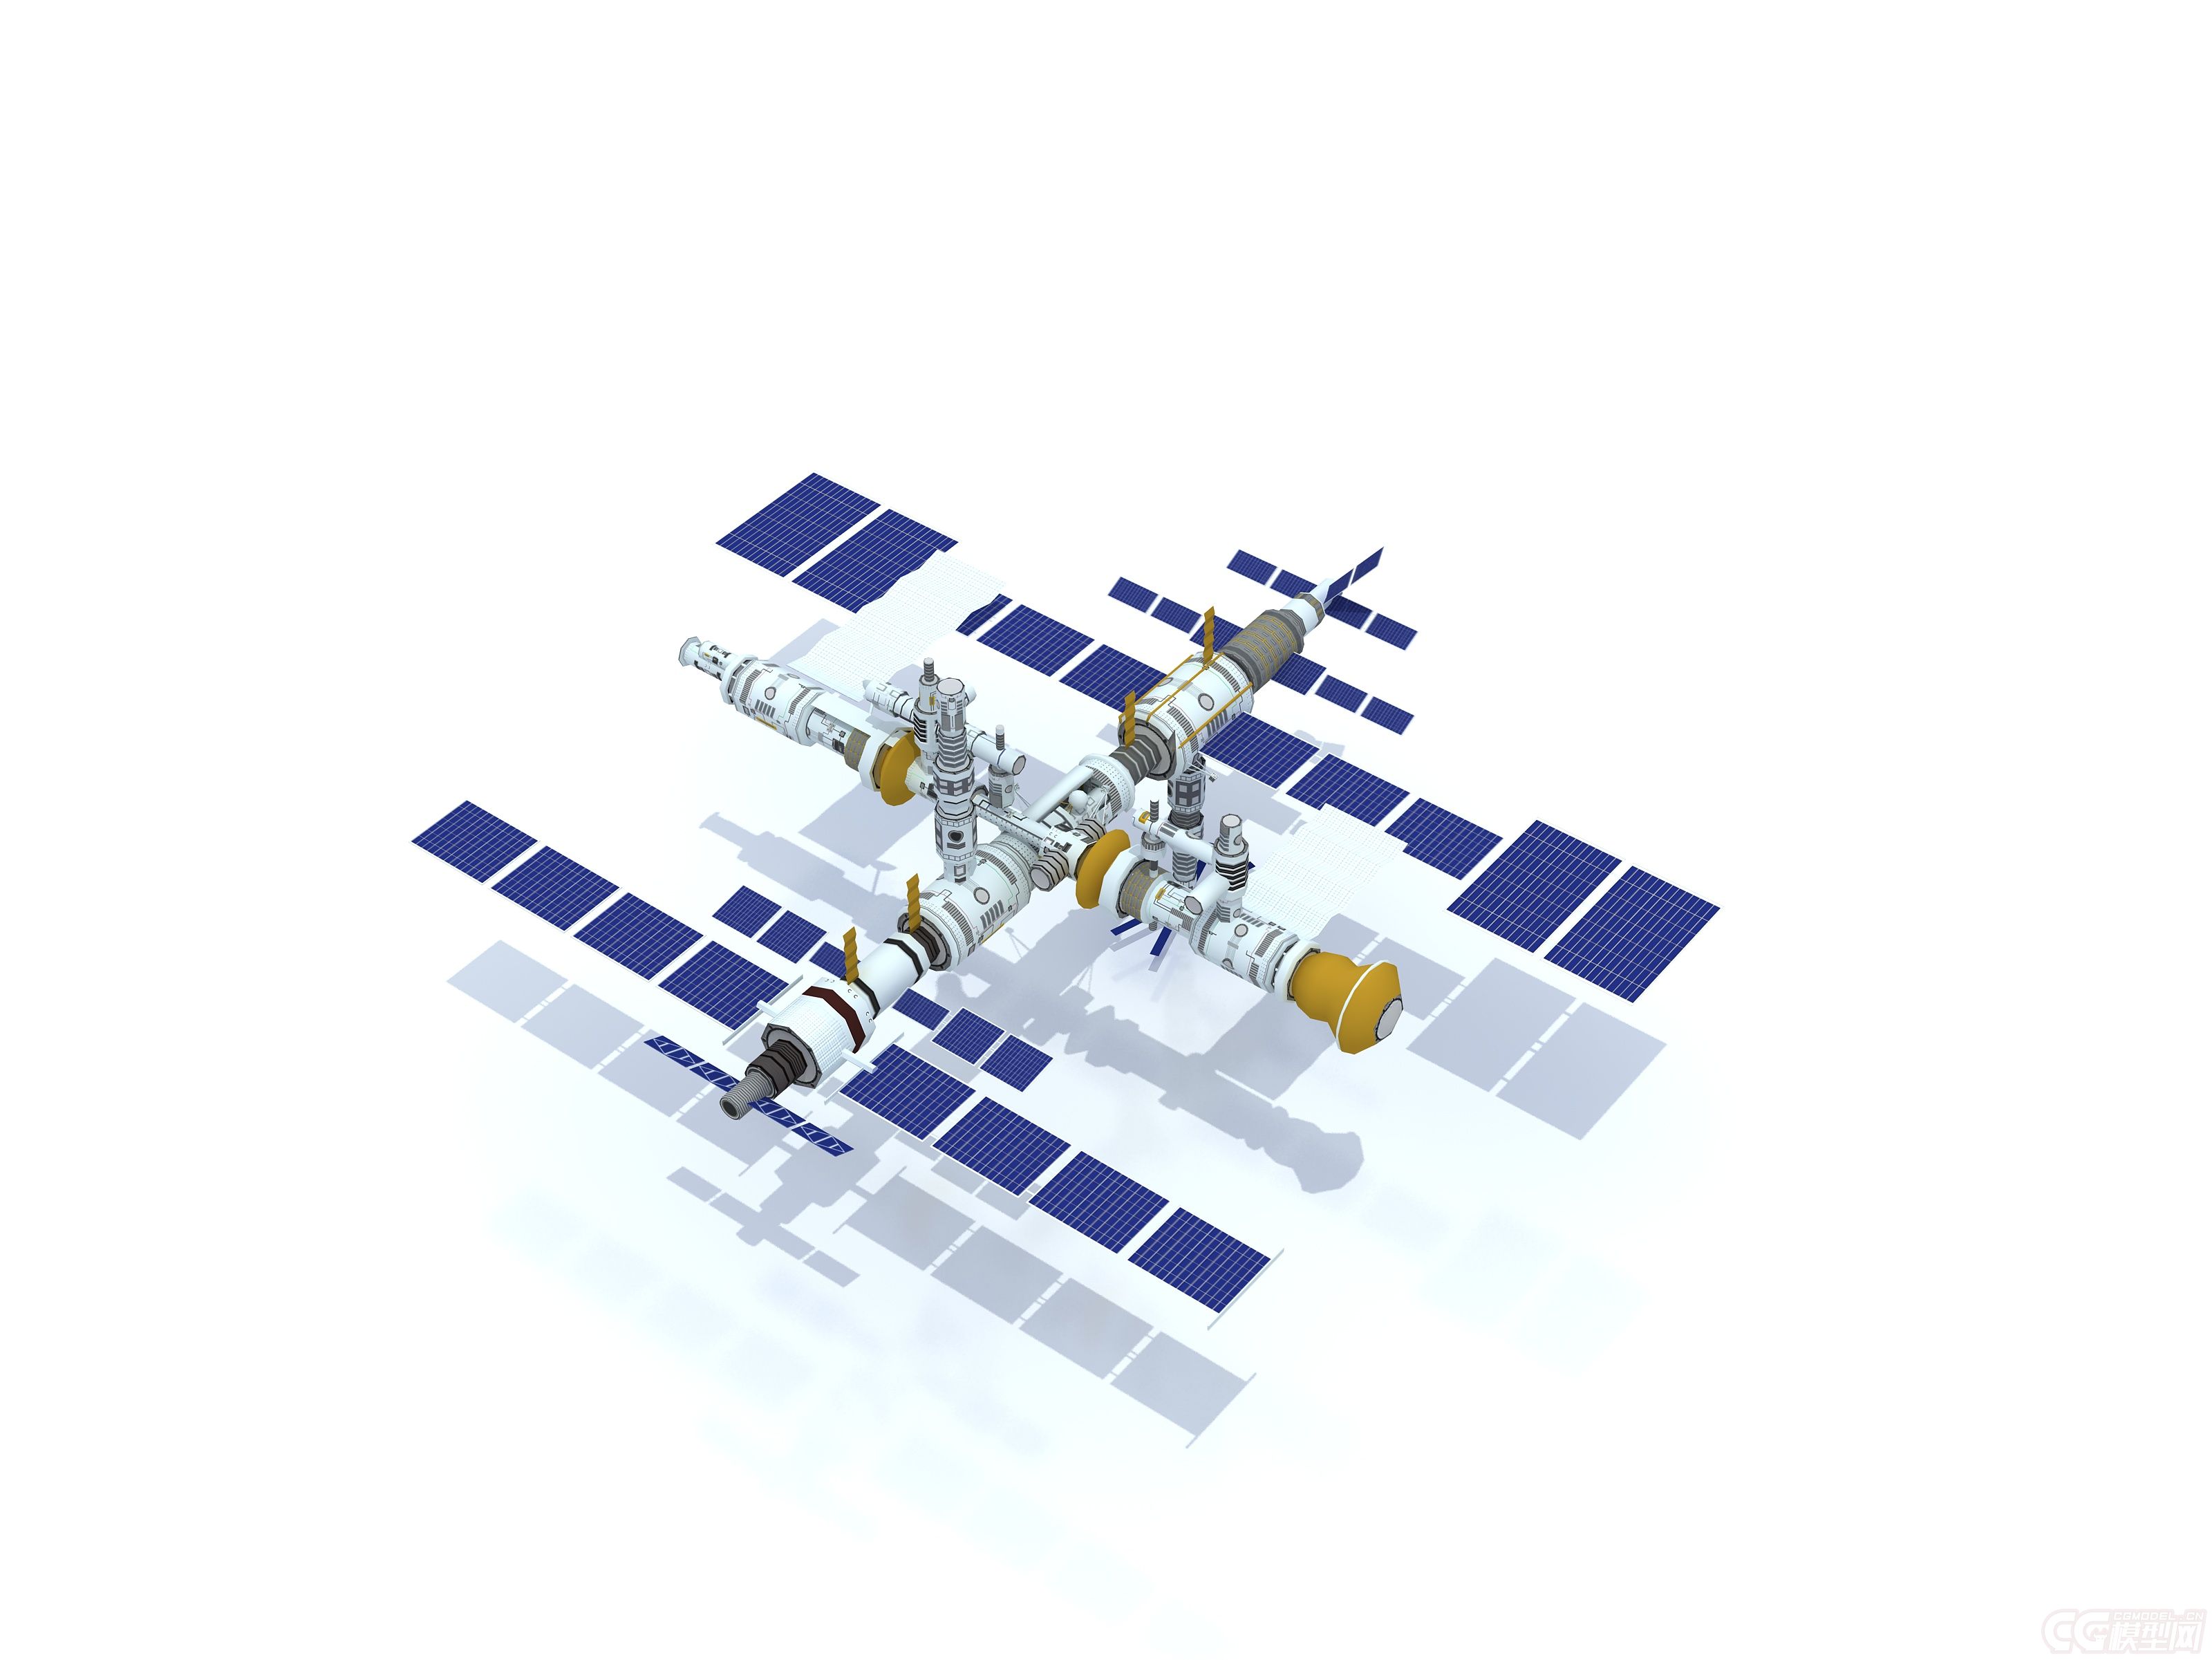 国际空间站-其他-生活用具-zhanglianda-cg模型网